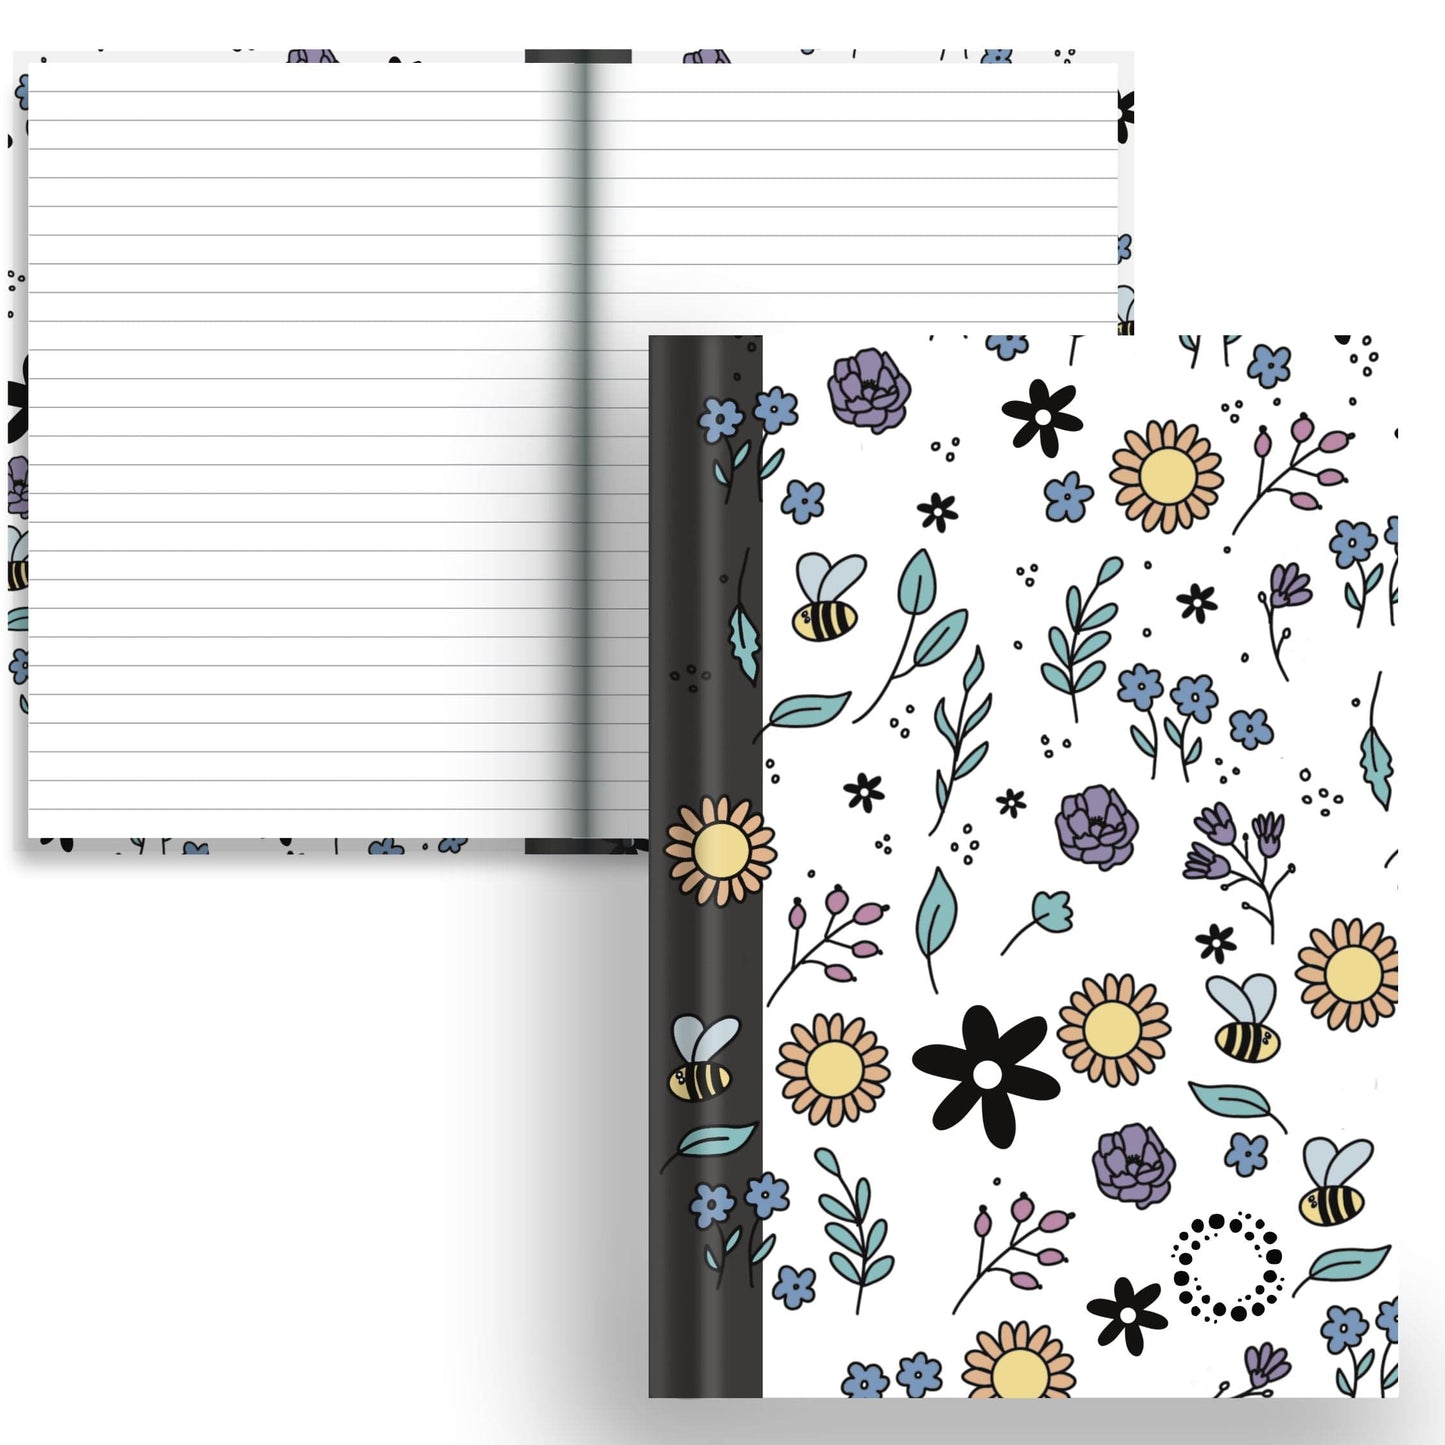 DayDot Journals A5 Notebook Lined Paper Bloom - A5 Hardback Notebook